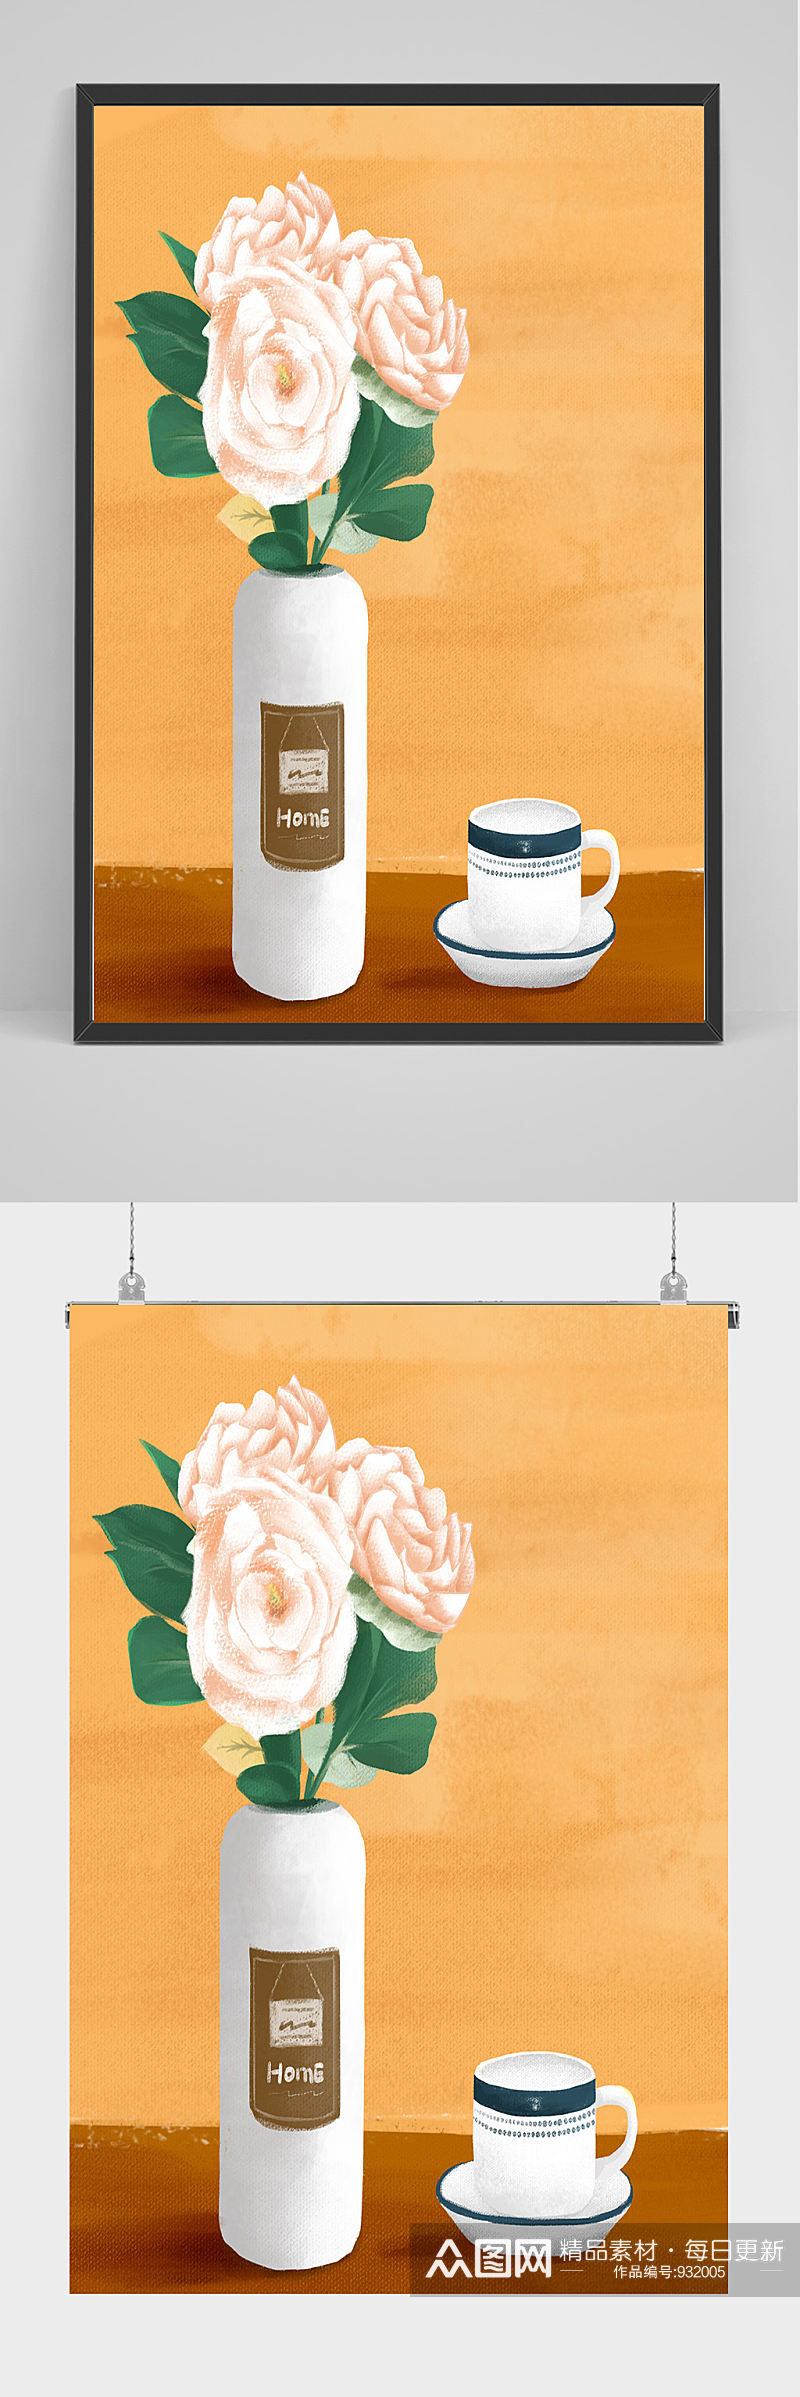 手绘咖啡鲜花插画设计素材